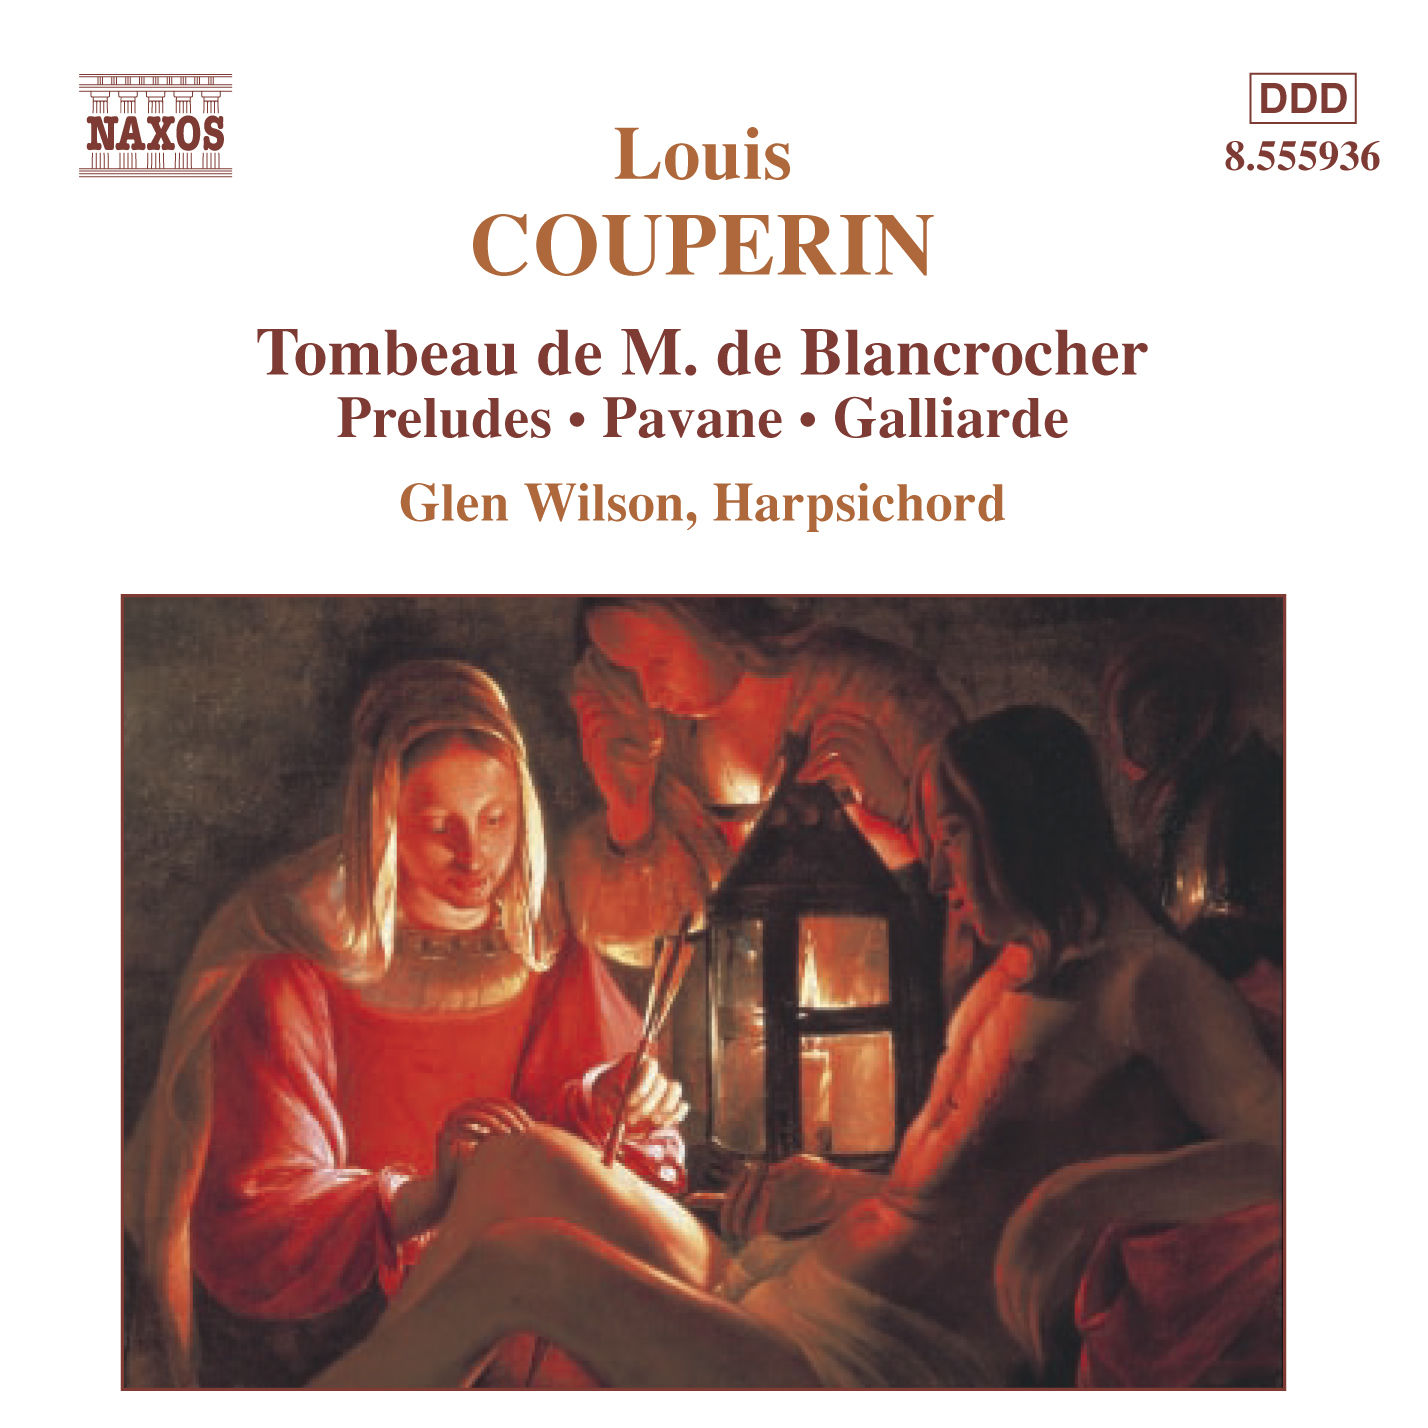 Couperin, Louis - Tombeau de M. de Blancrocher; Preludes; Pavane & Galliarde - Glen Wilson